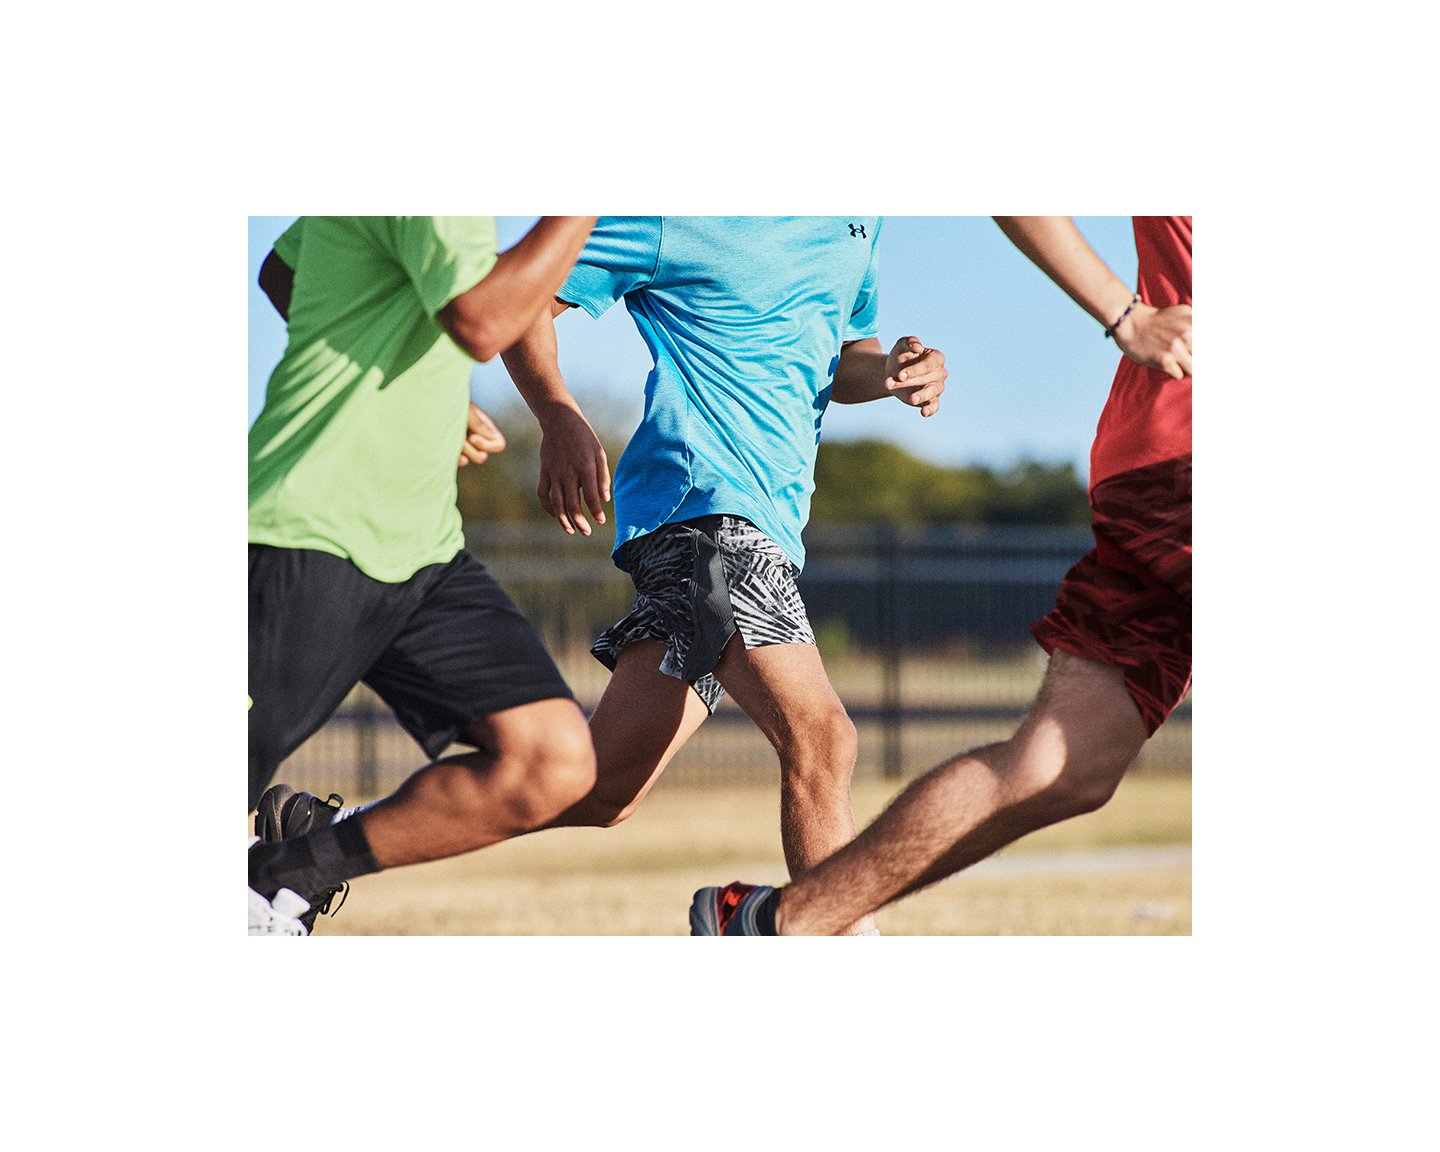 Men's UA Launch Run 7 Shorts